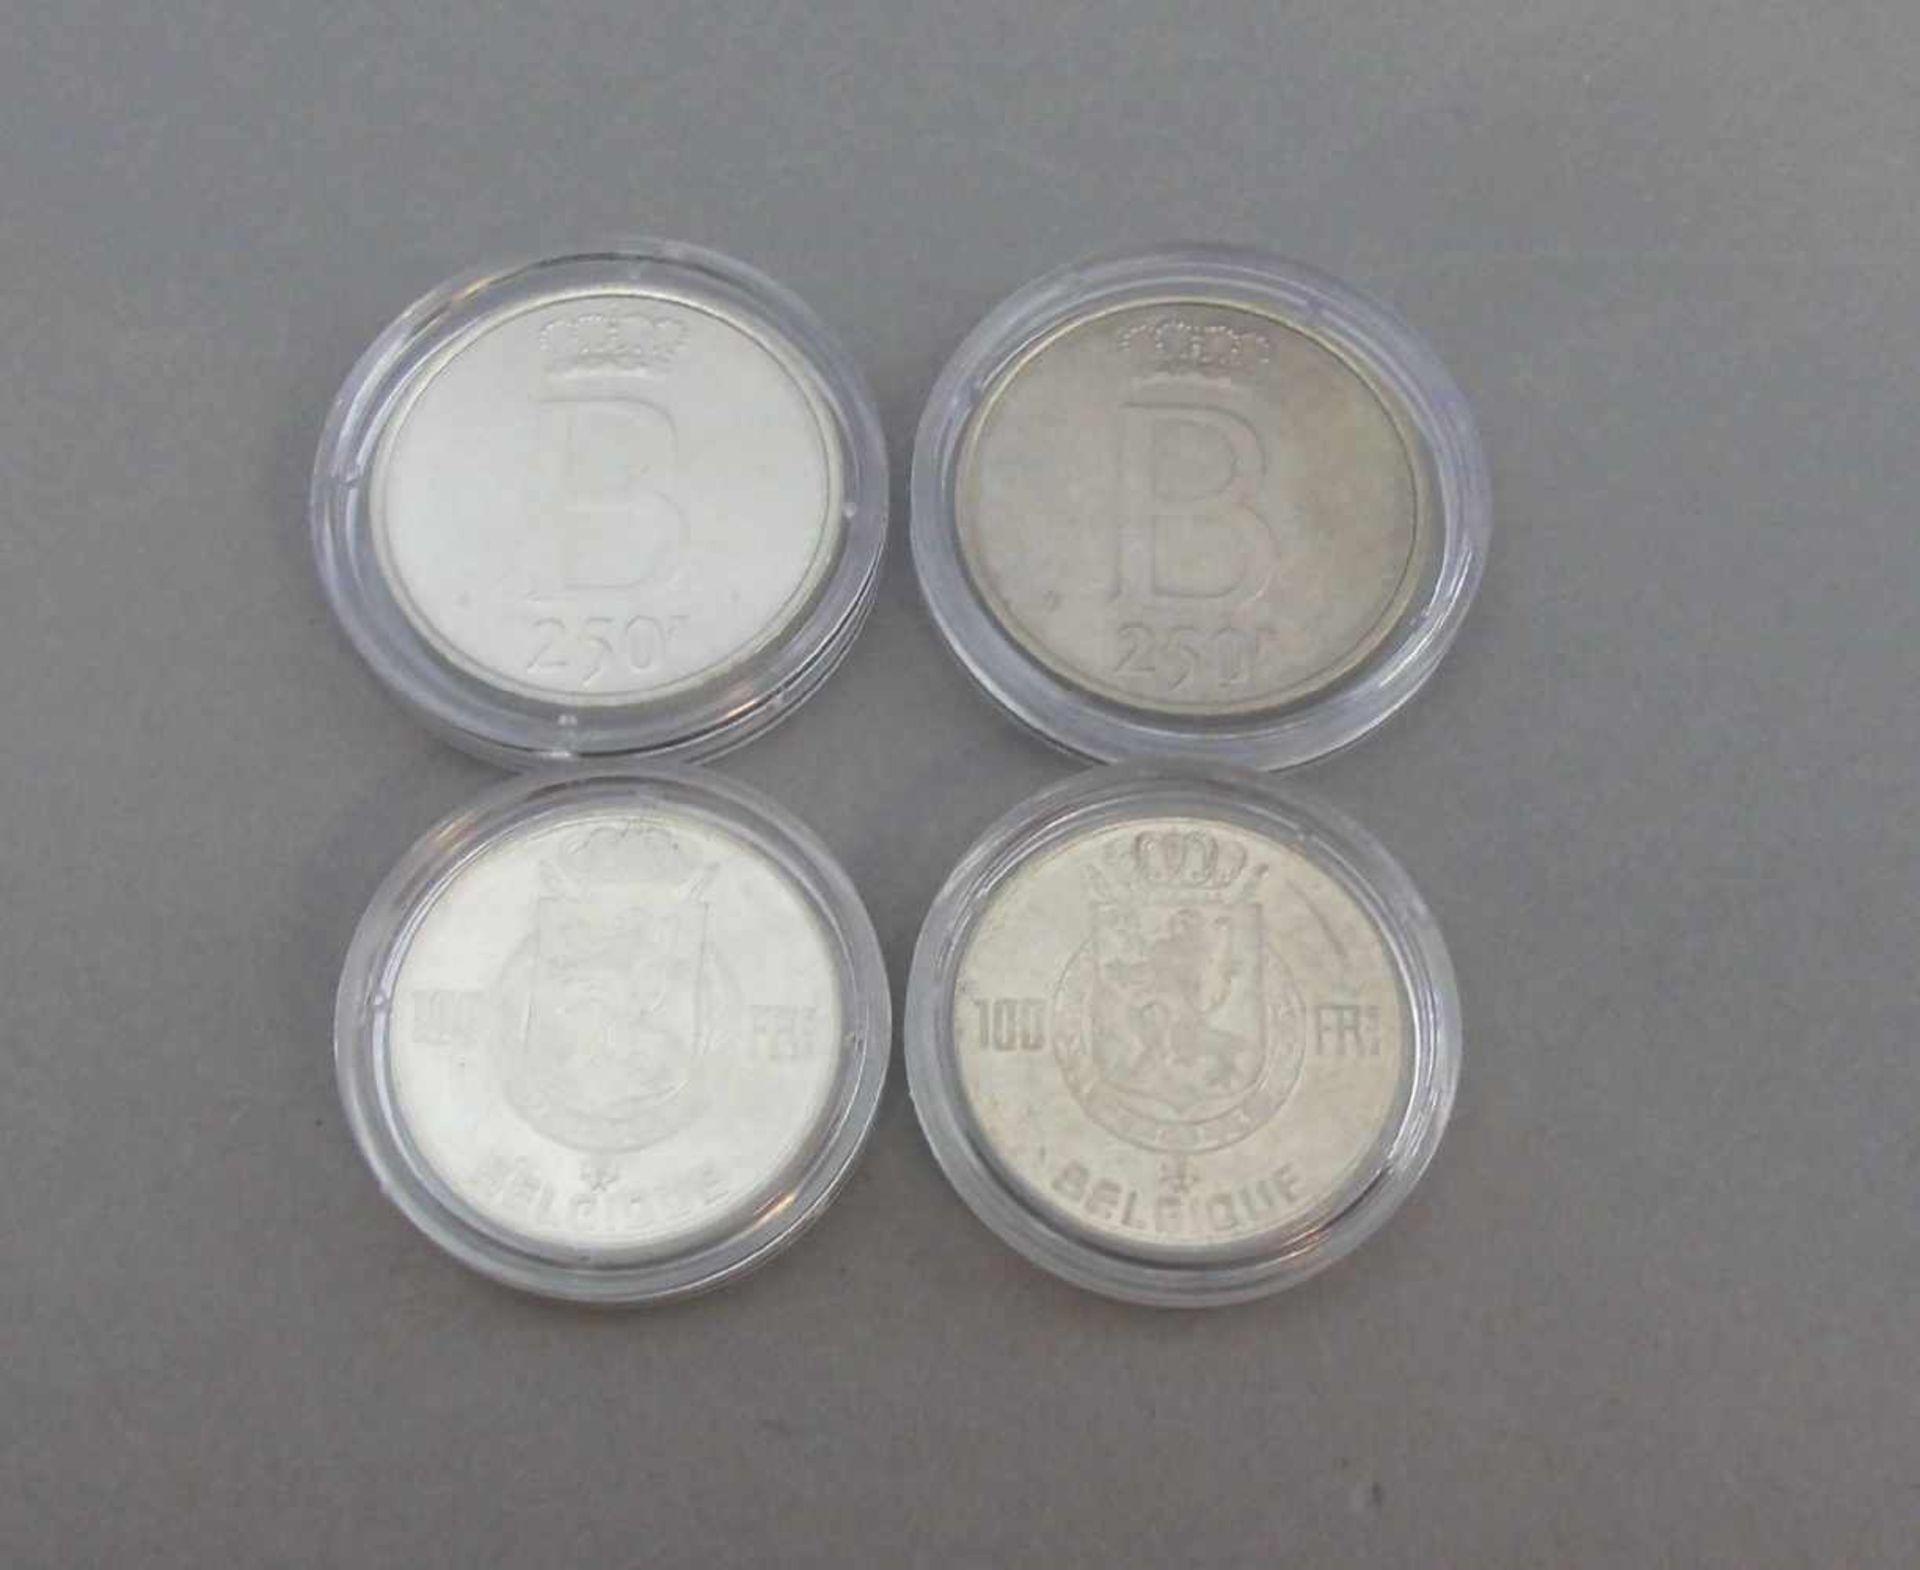 KONVOLUT MÜNZEN / SILBERMÜNZEN - BELGIEN / coins, 20. Jh., unterschiedliche Nominalwerte und